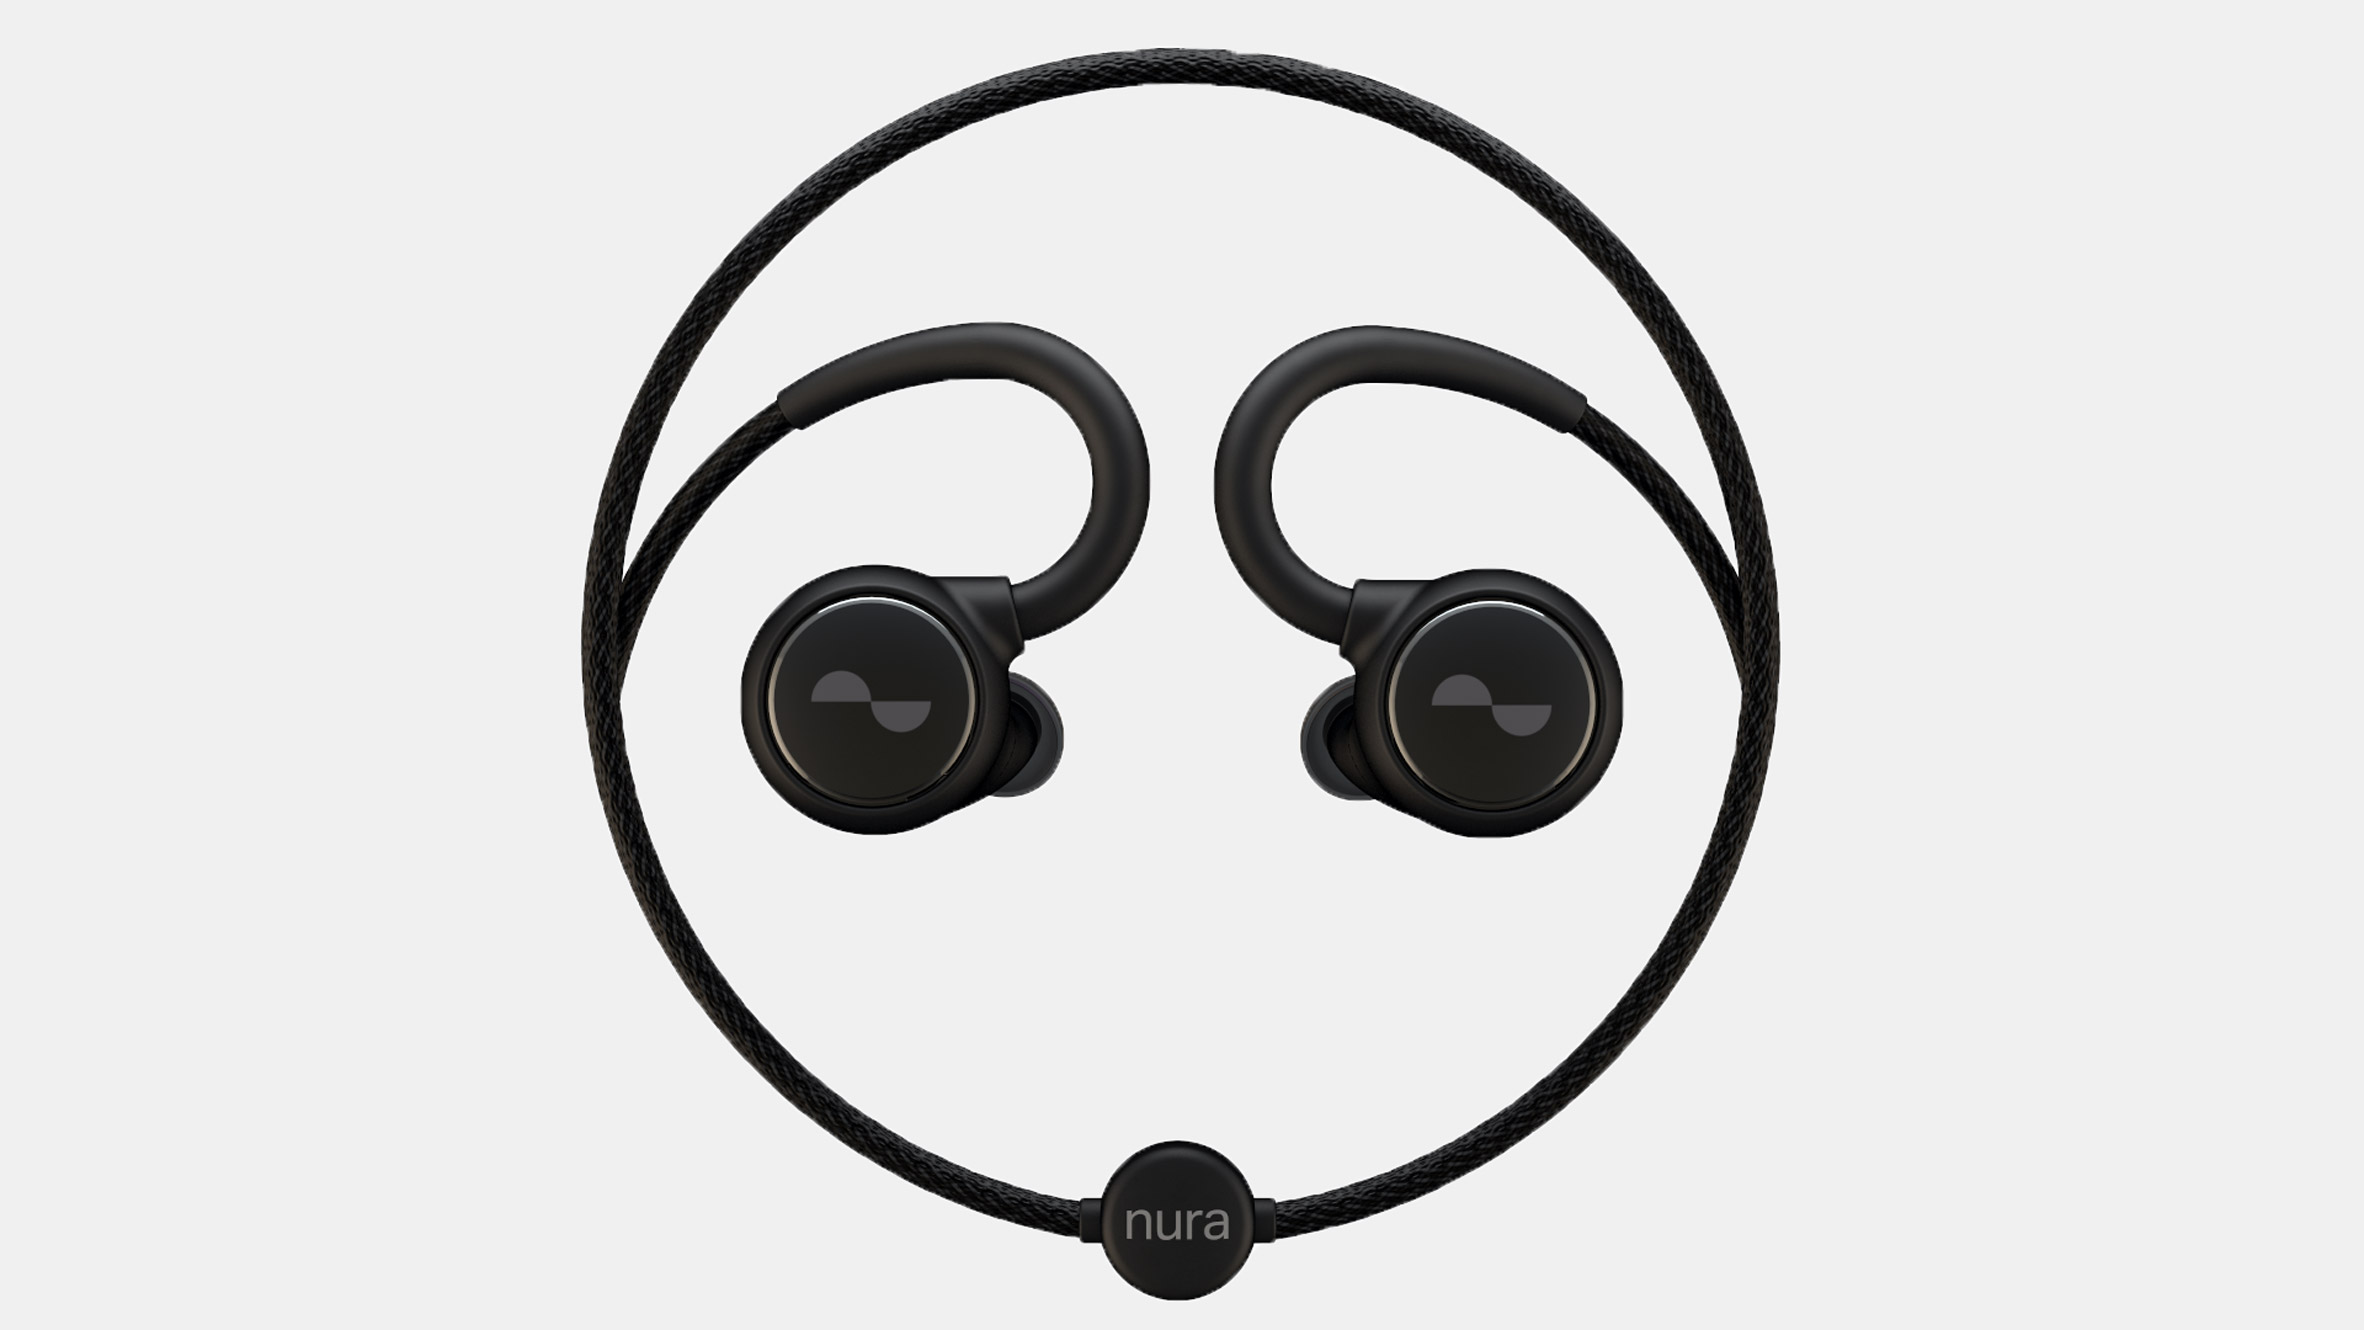 Nura loop headphones